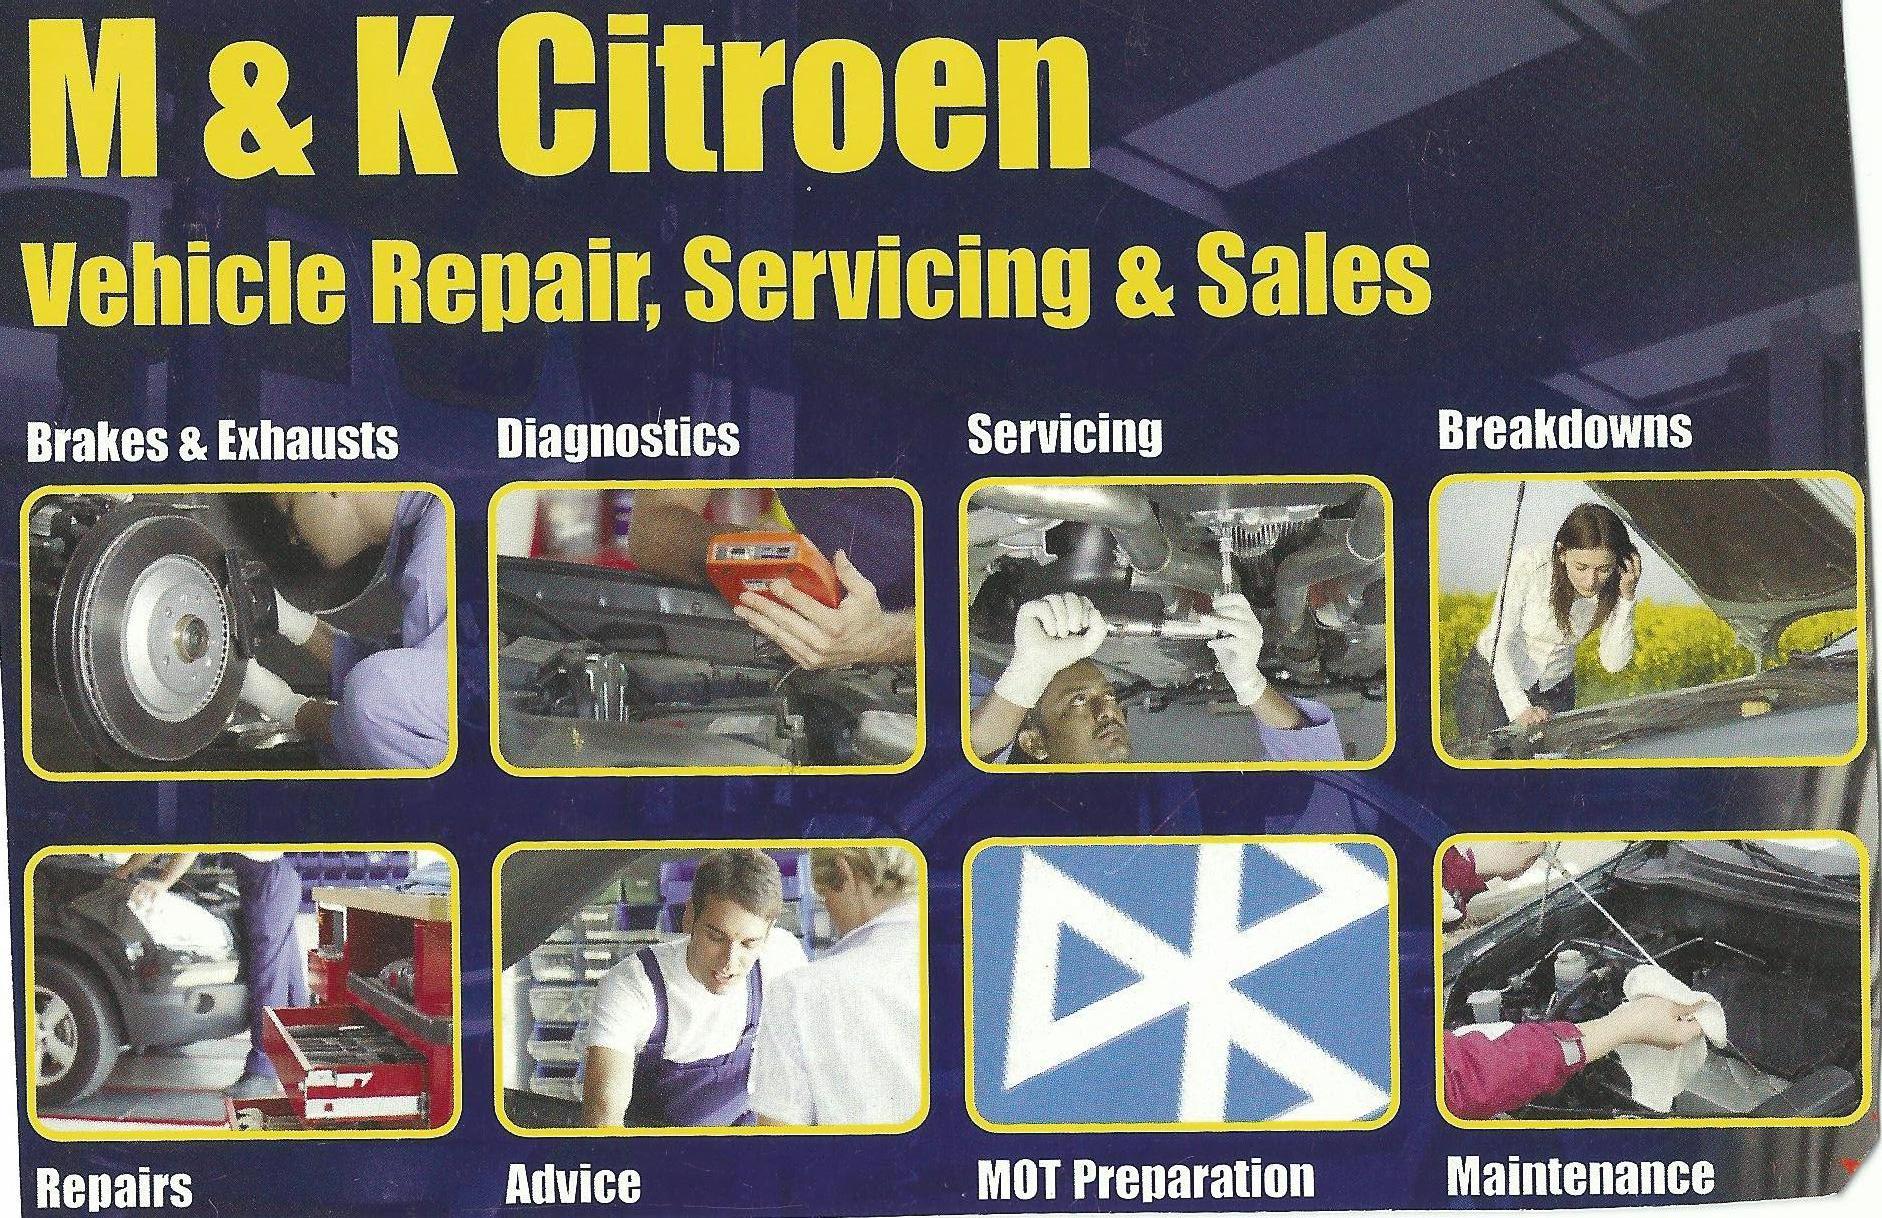 Images M & K Garage Services